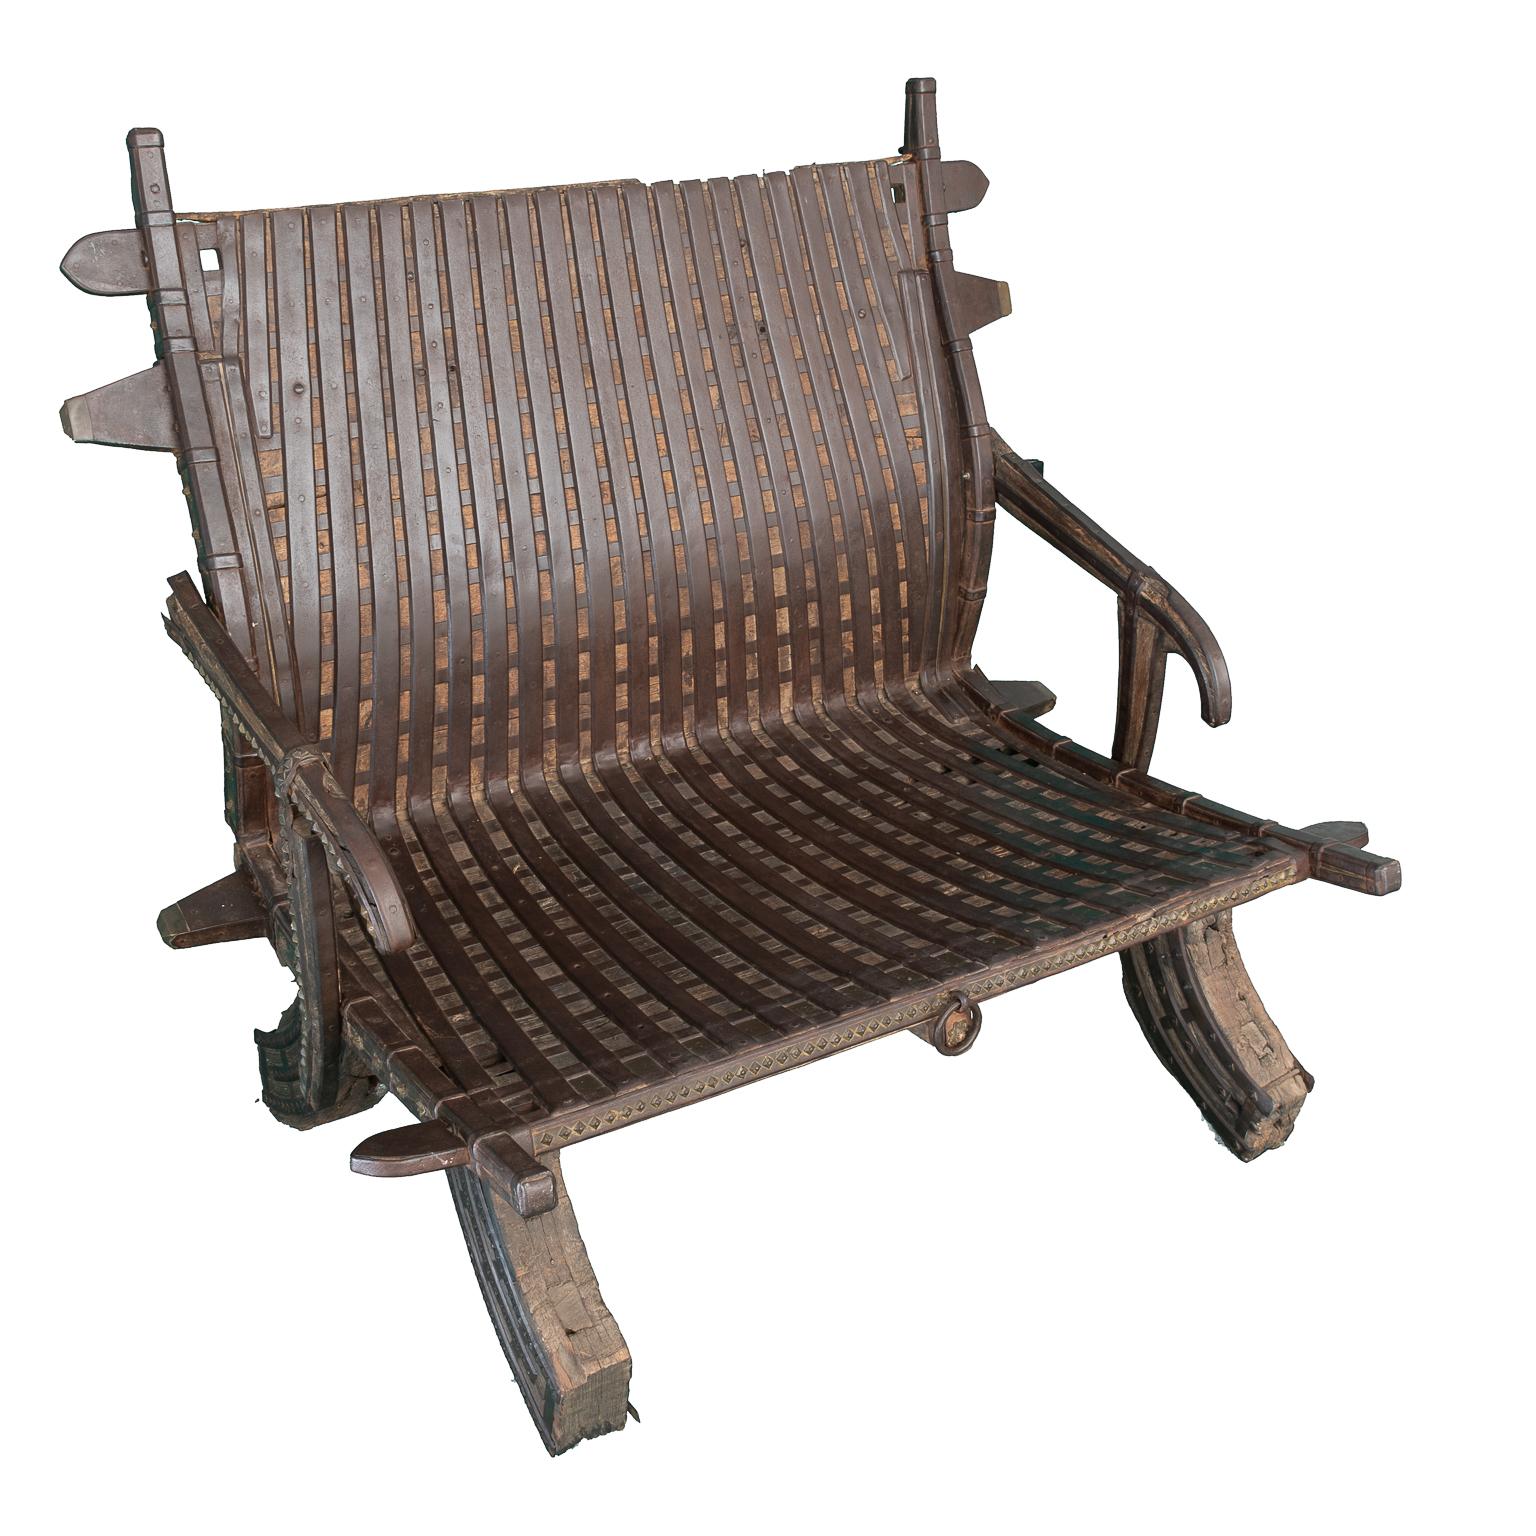 Hindu-Stuhl, alt vom Anfang des 18. Jahrhunderts, aus Holz mit Schmiedeeisen, er hat Abnutzung und Verschlechterung aufgrund der Antike.